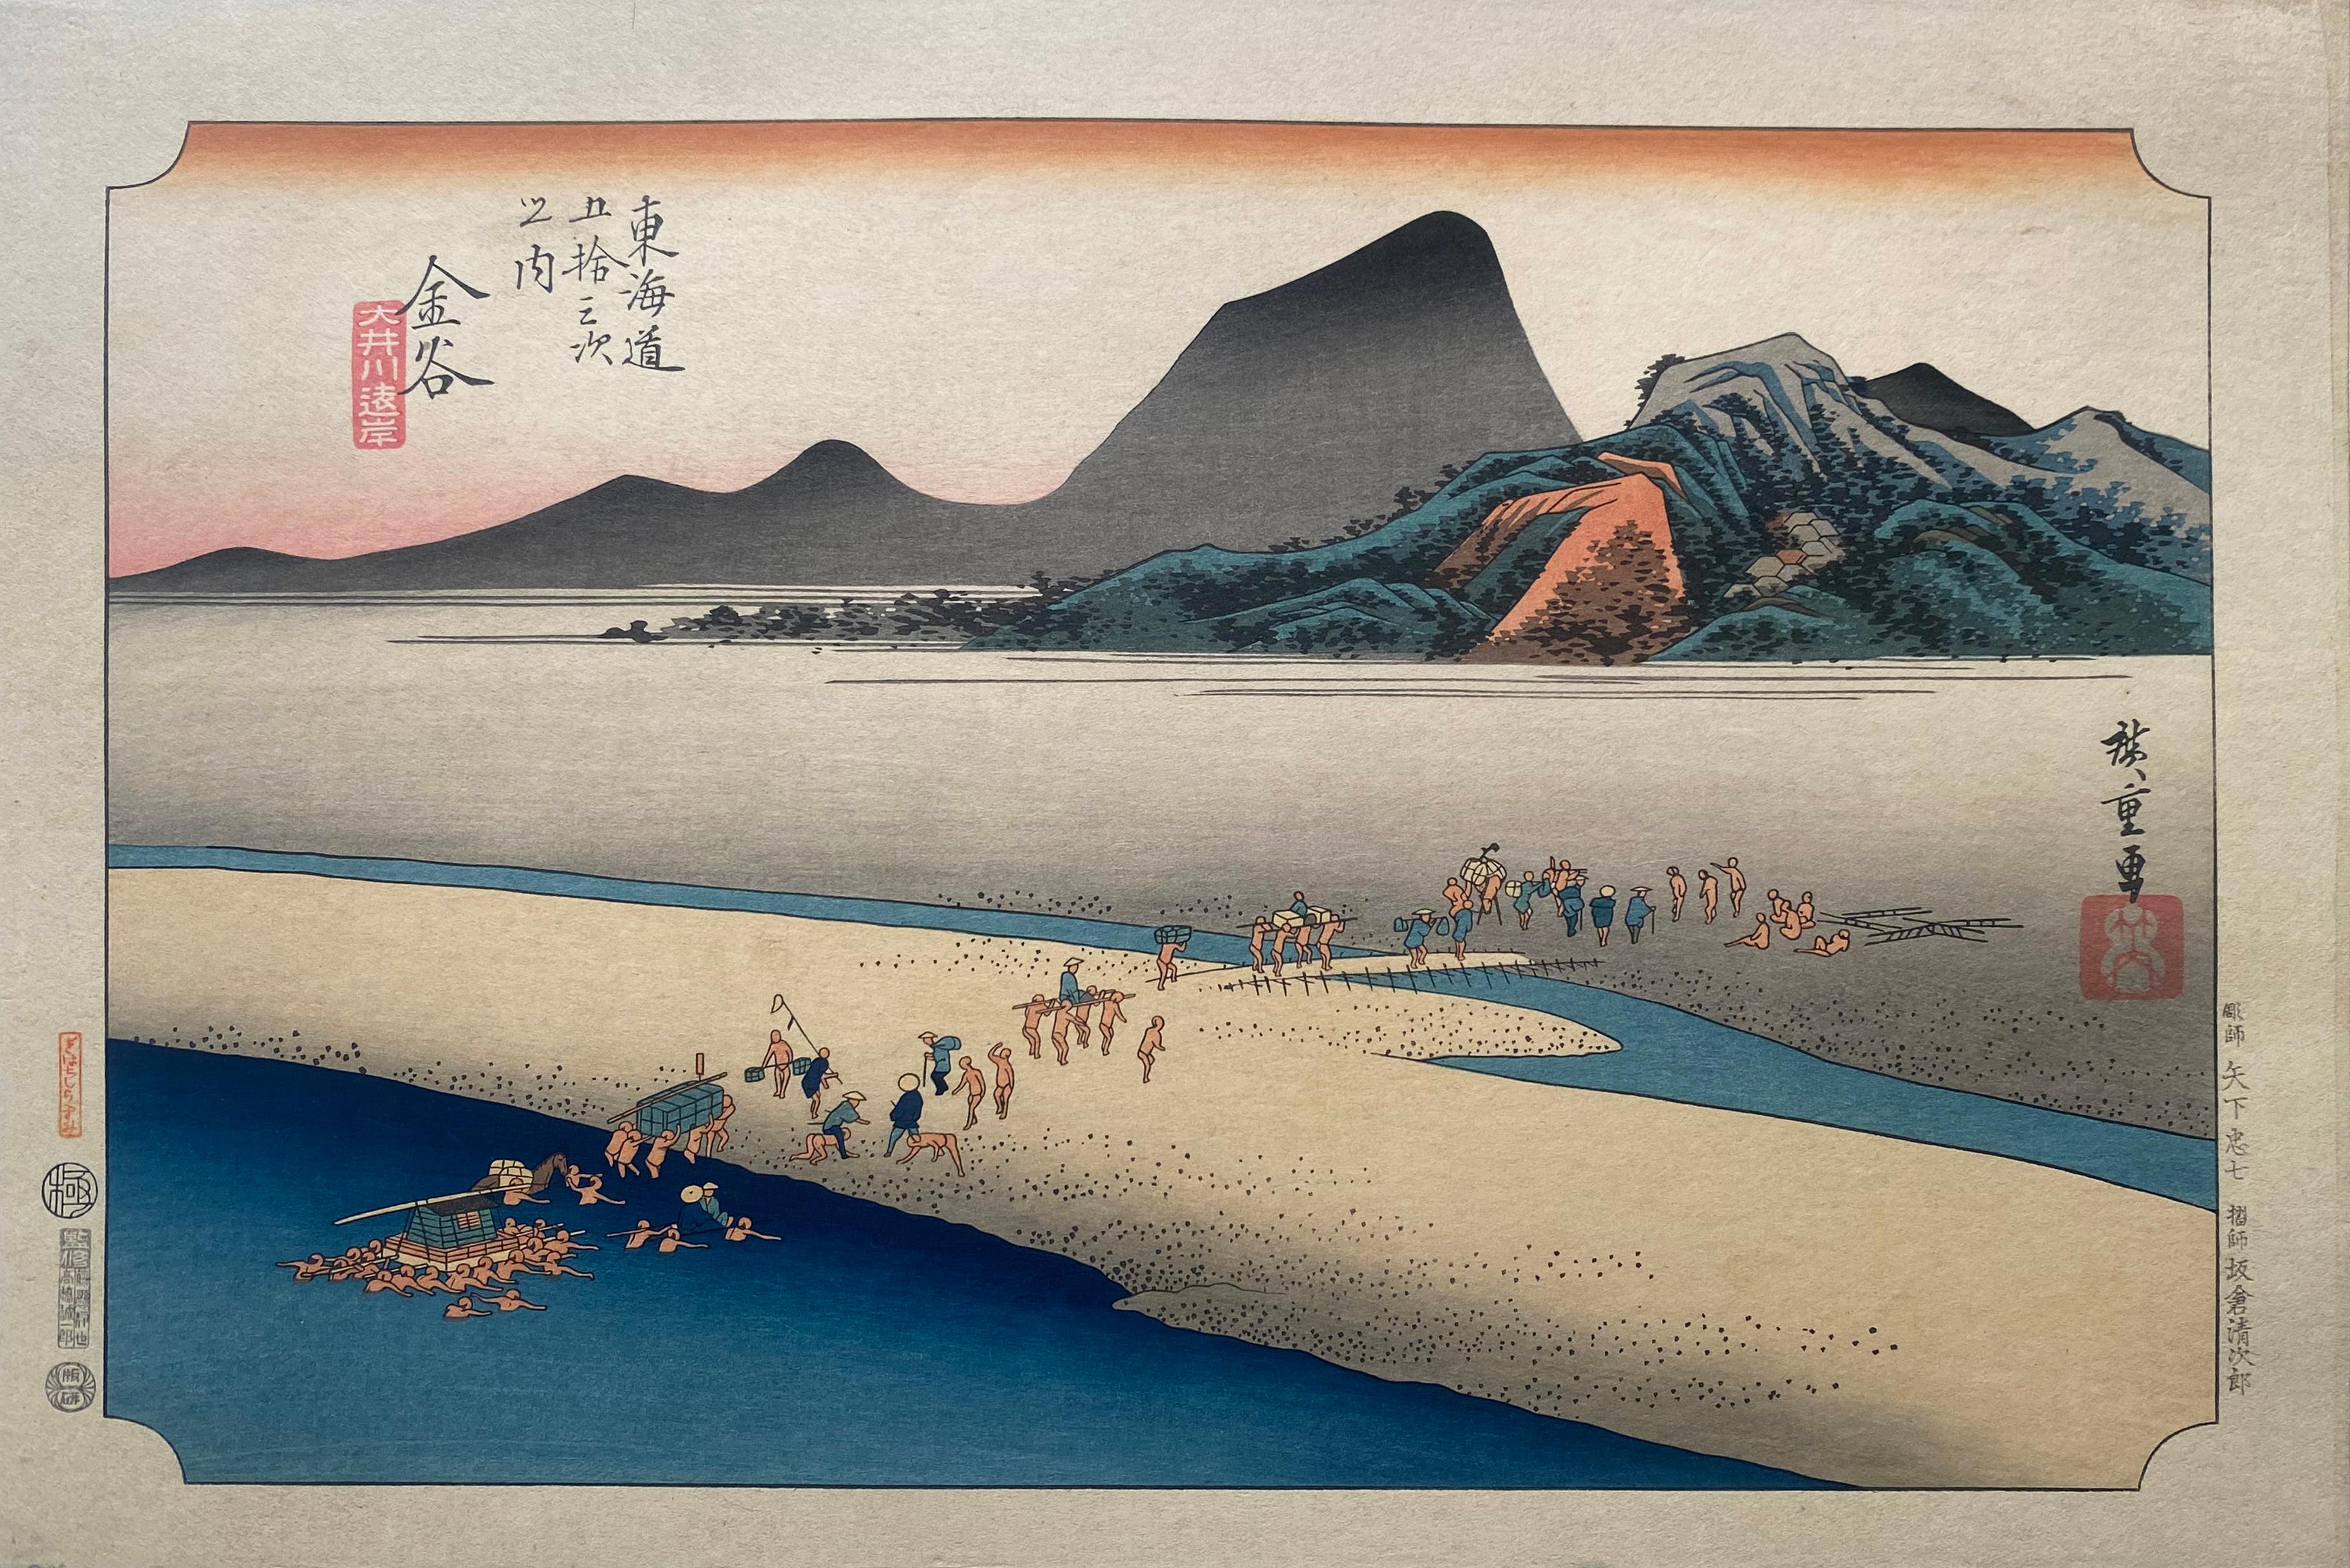 Utagawa Hiroshige (Ando Hiroshige) Landscape Print - 'View of Kanaya',  After Utagawa Hiroshige 歌川廣重, Ukiyo-e Woodblock, Tokaido